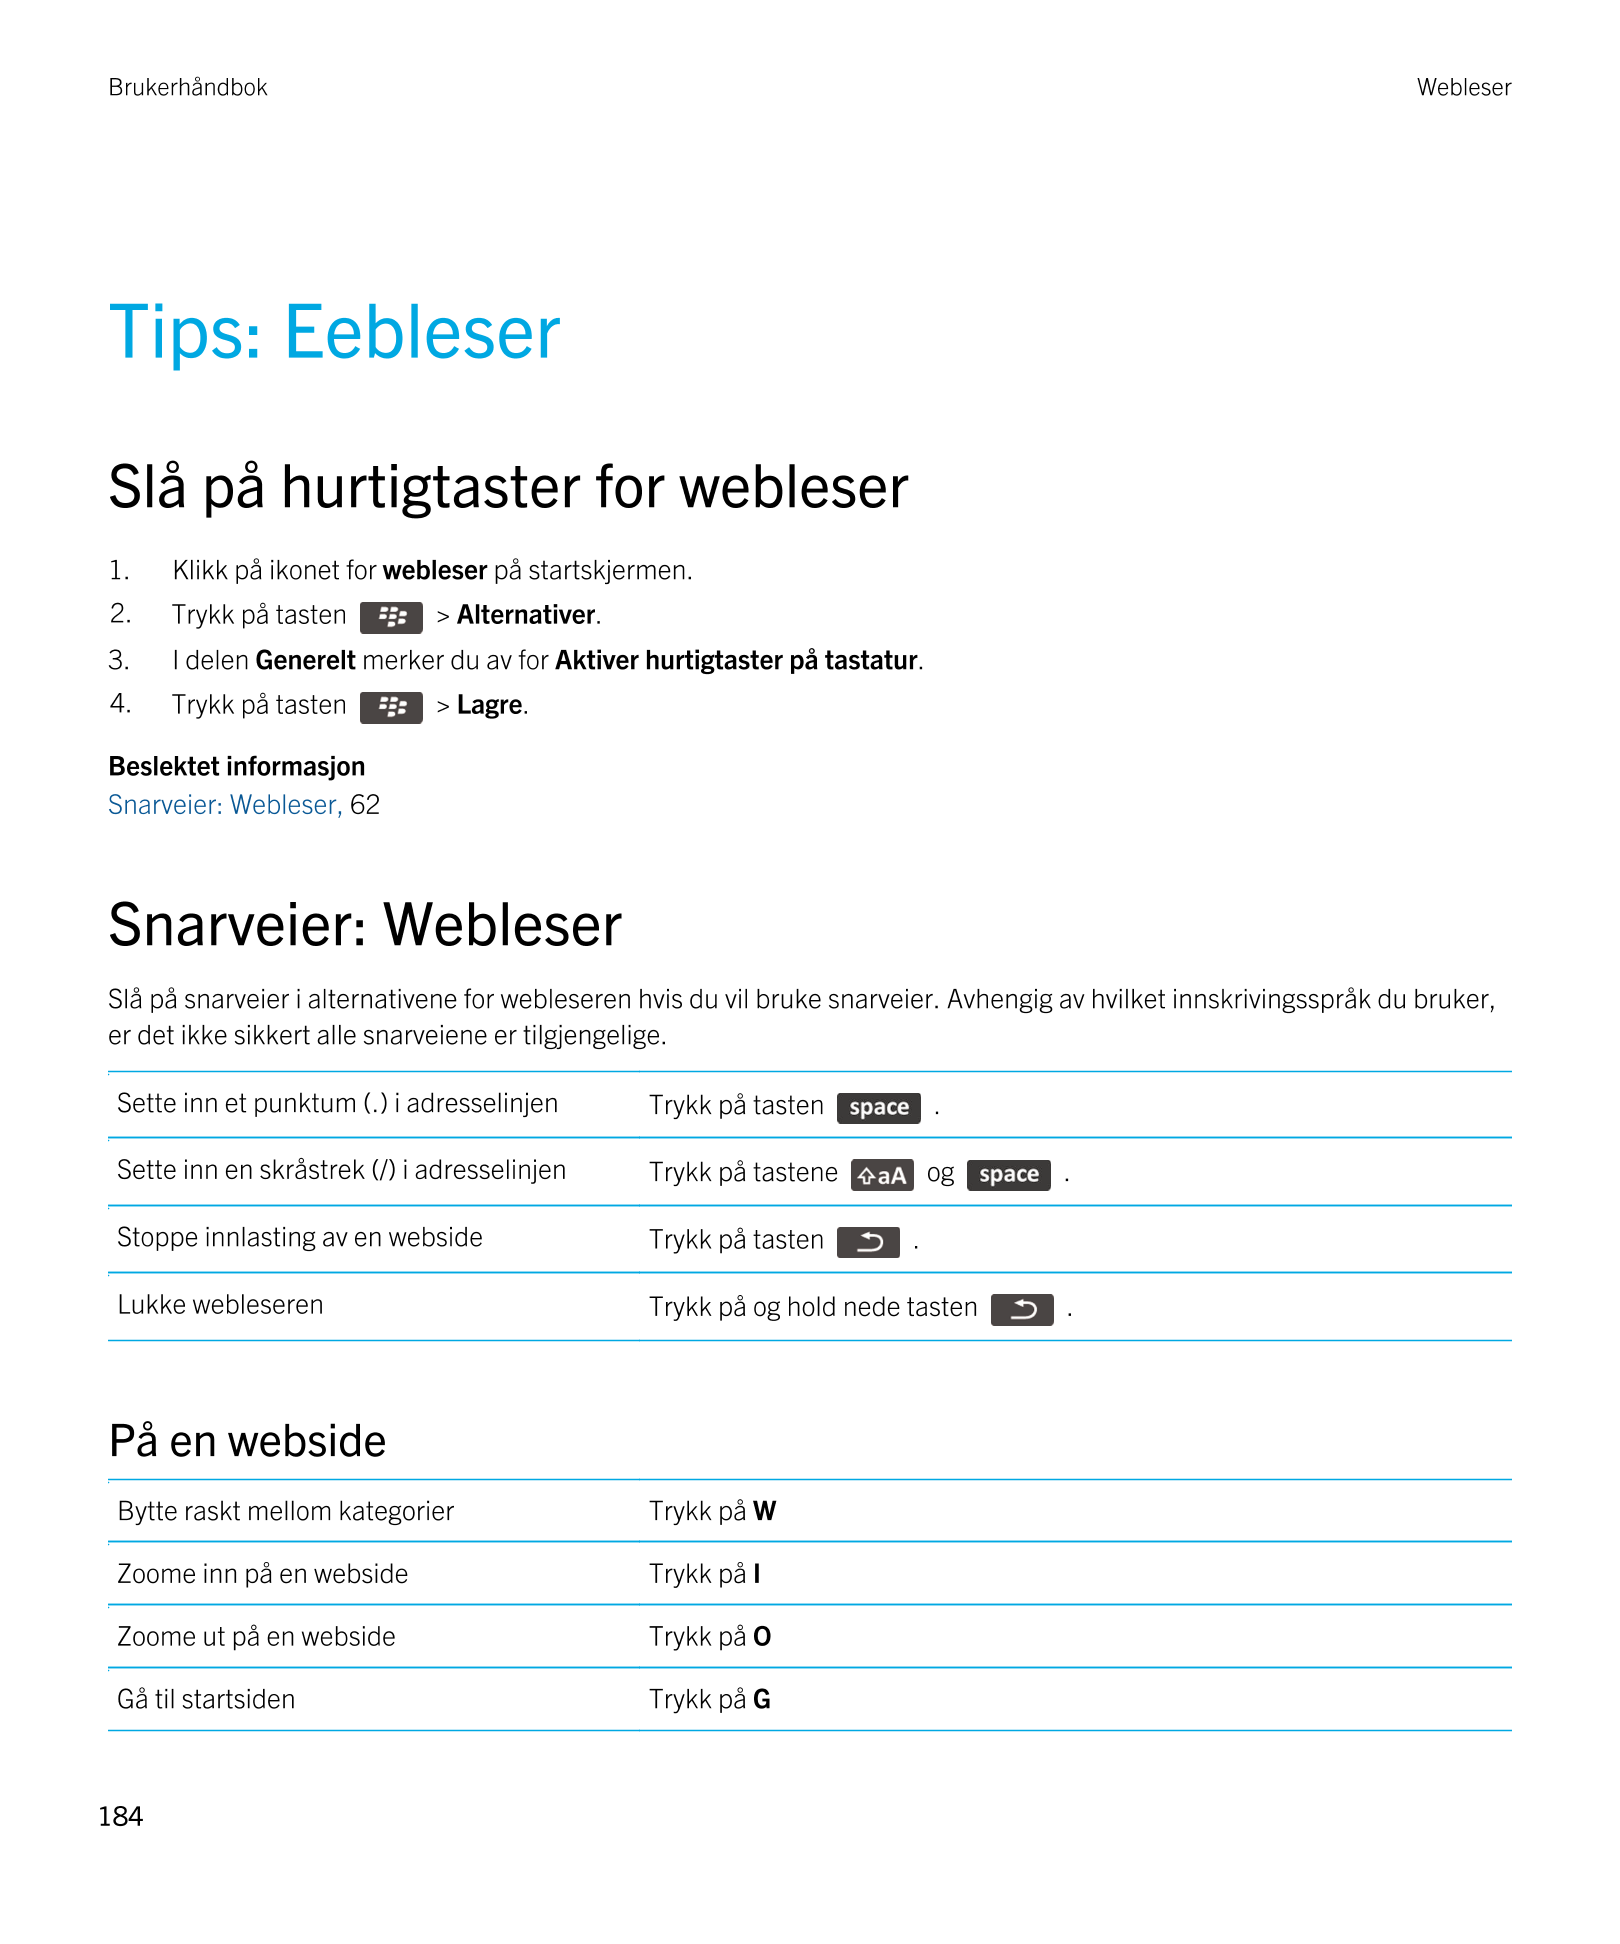 Brukerhåndbok Webleser
Tips: Eebleser
Slå på hurtigtaster for webleser
1. Klikk på ikonet for  webleser på startskjermen.
2. Try